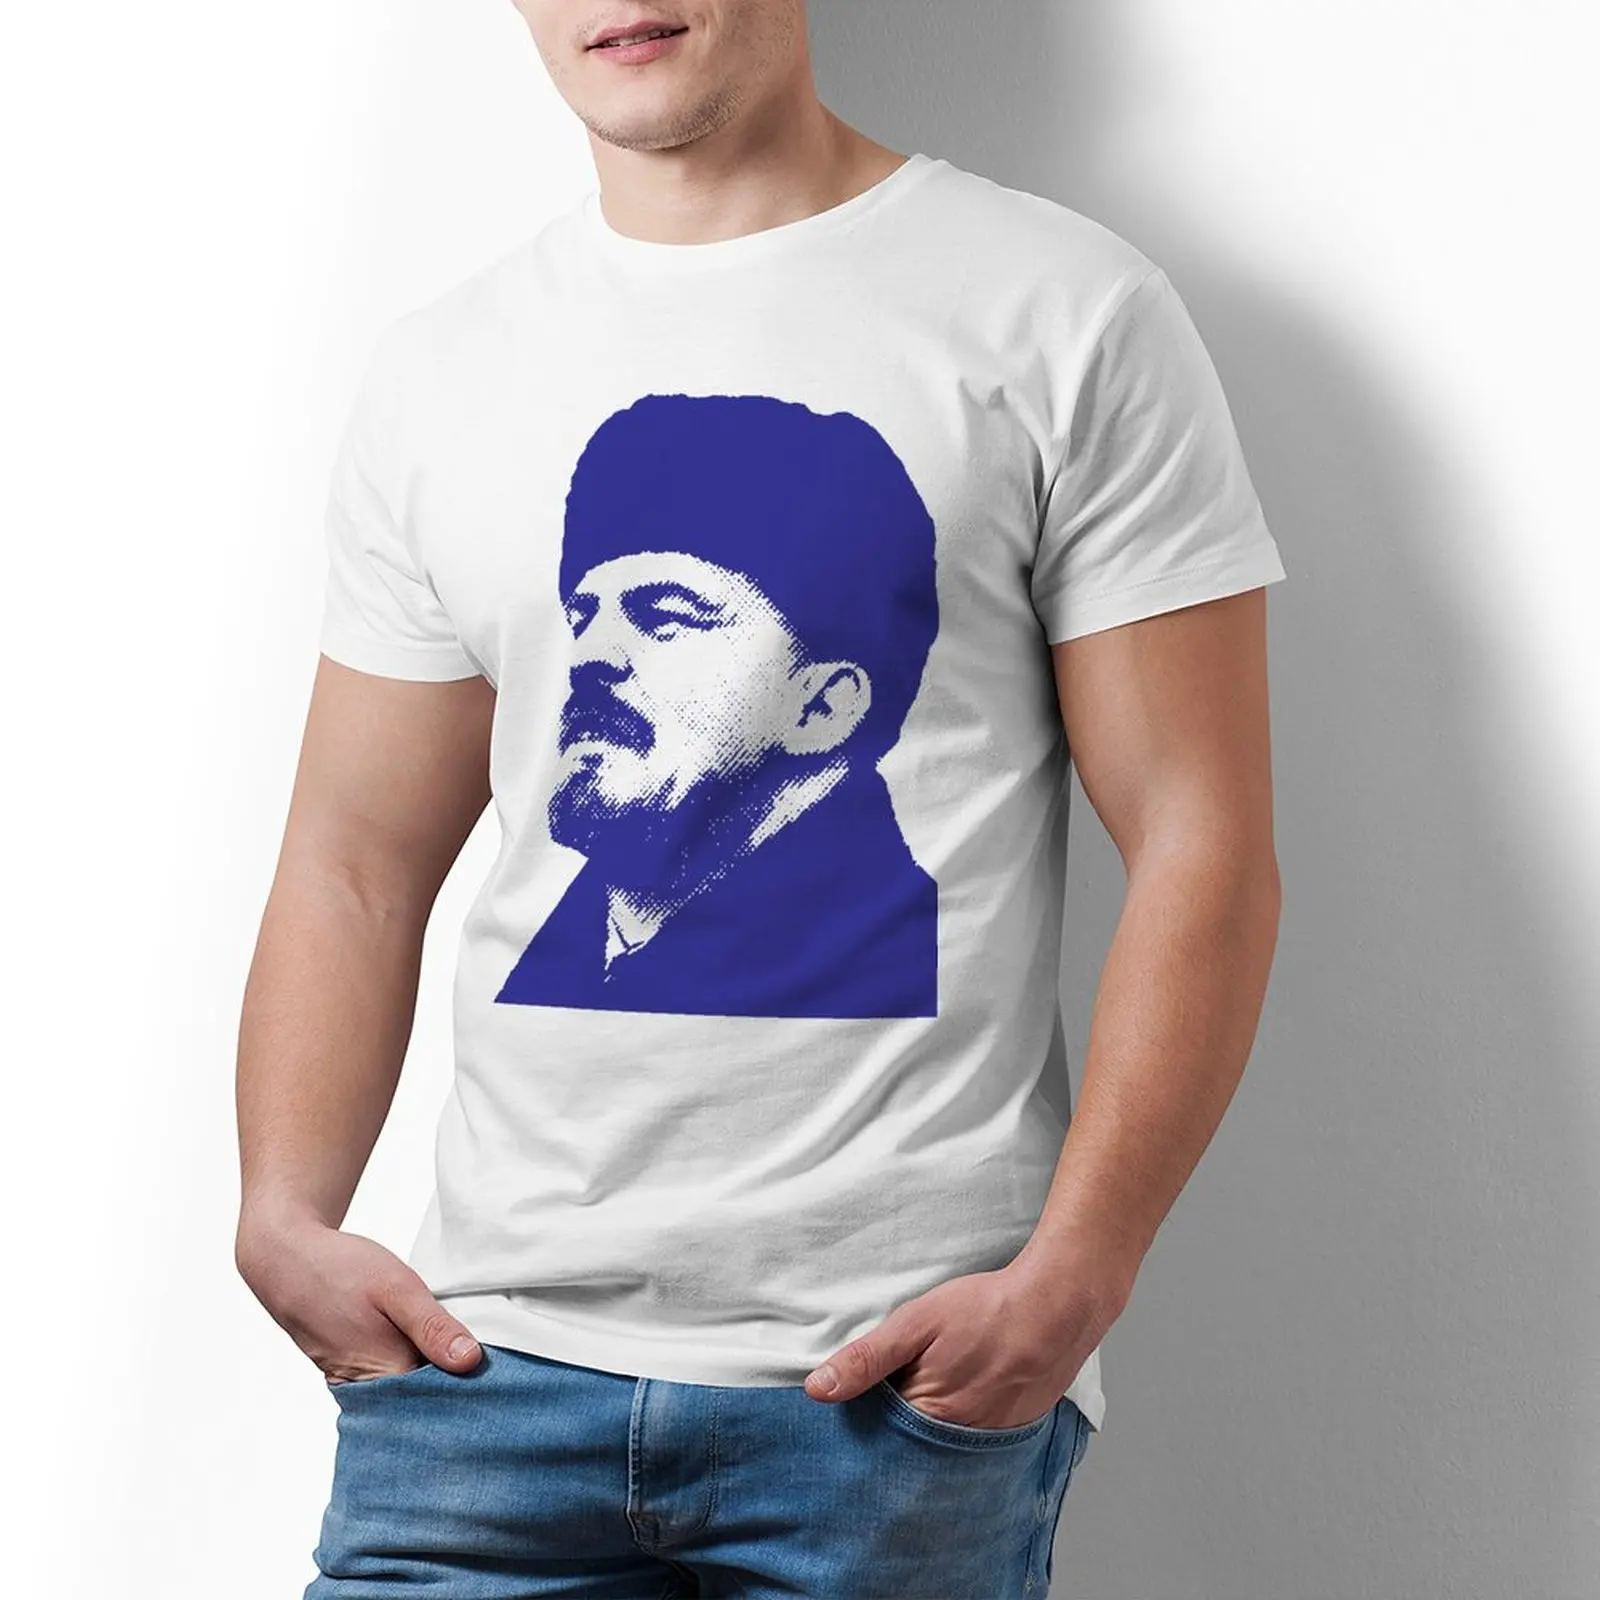 

Футболка Владимир Ленин потрясающая Классическая футболка из 100 хлопка футболка с коротким рукавом с принтом Мужская 4xl